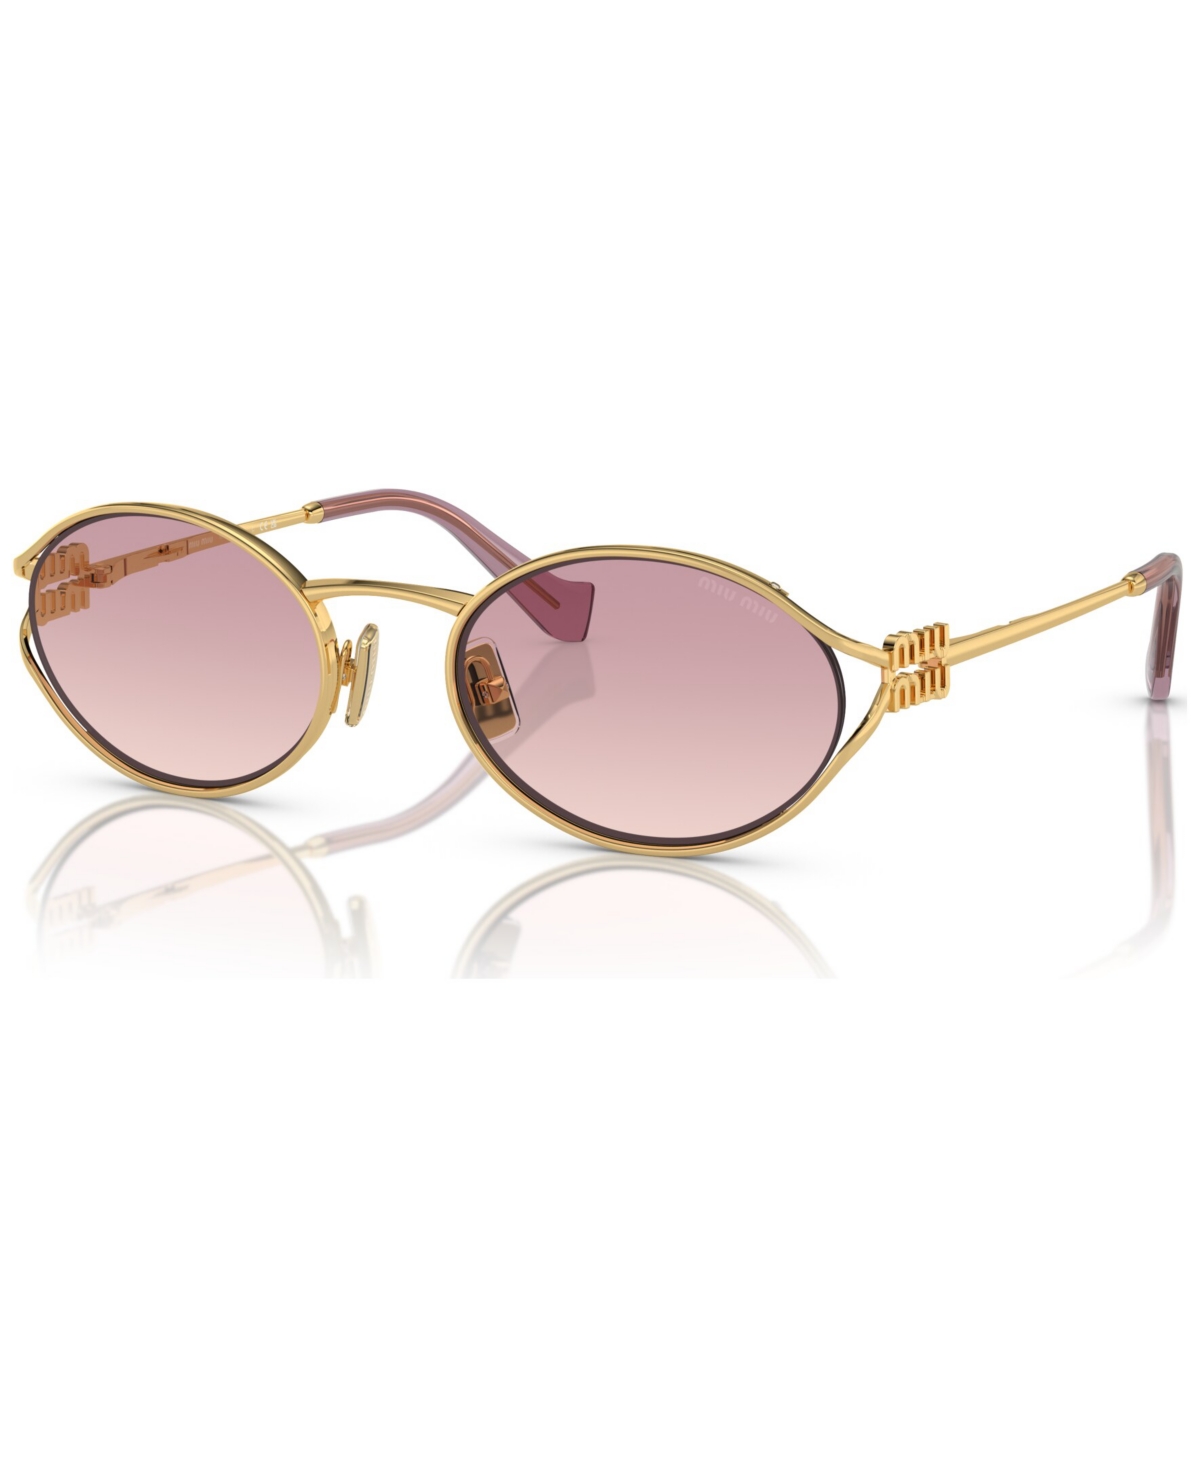 Miu Miu Women's Sunglasses, Mu 52ys In Gold-tone